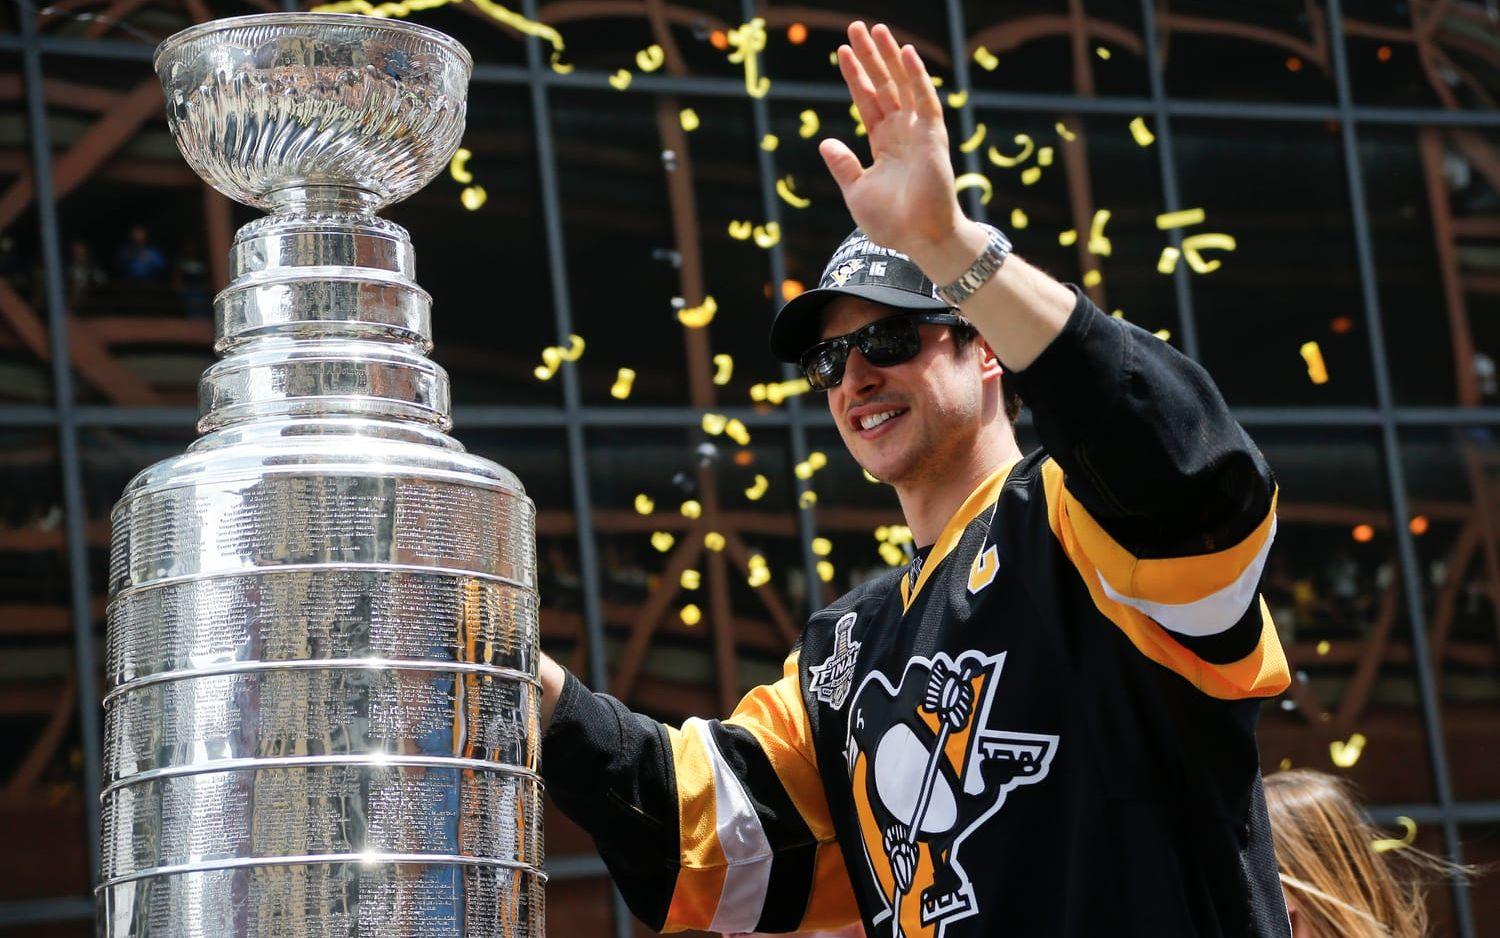 Regerande NHL-mästarna Pittsburgh Penguins kan ses i staden.